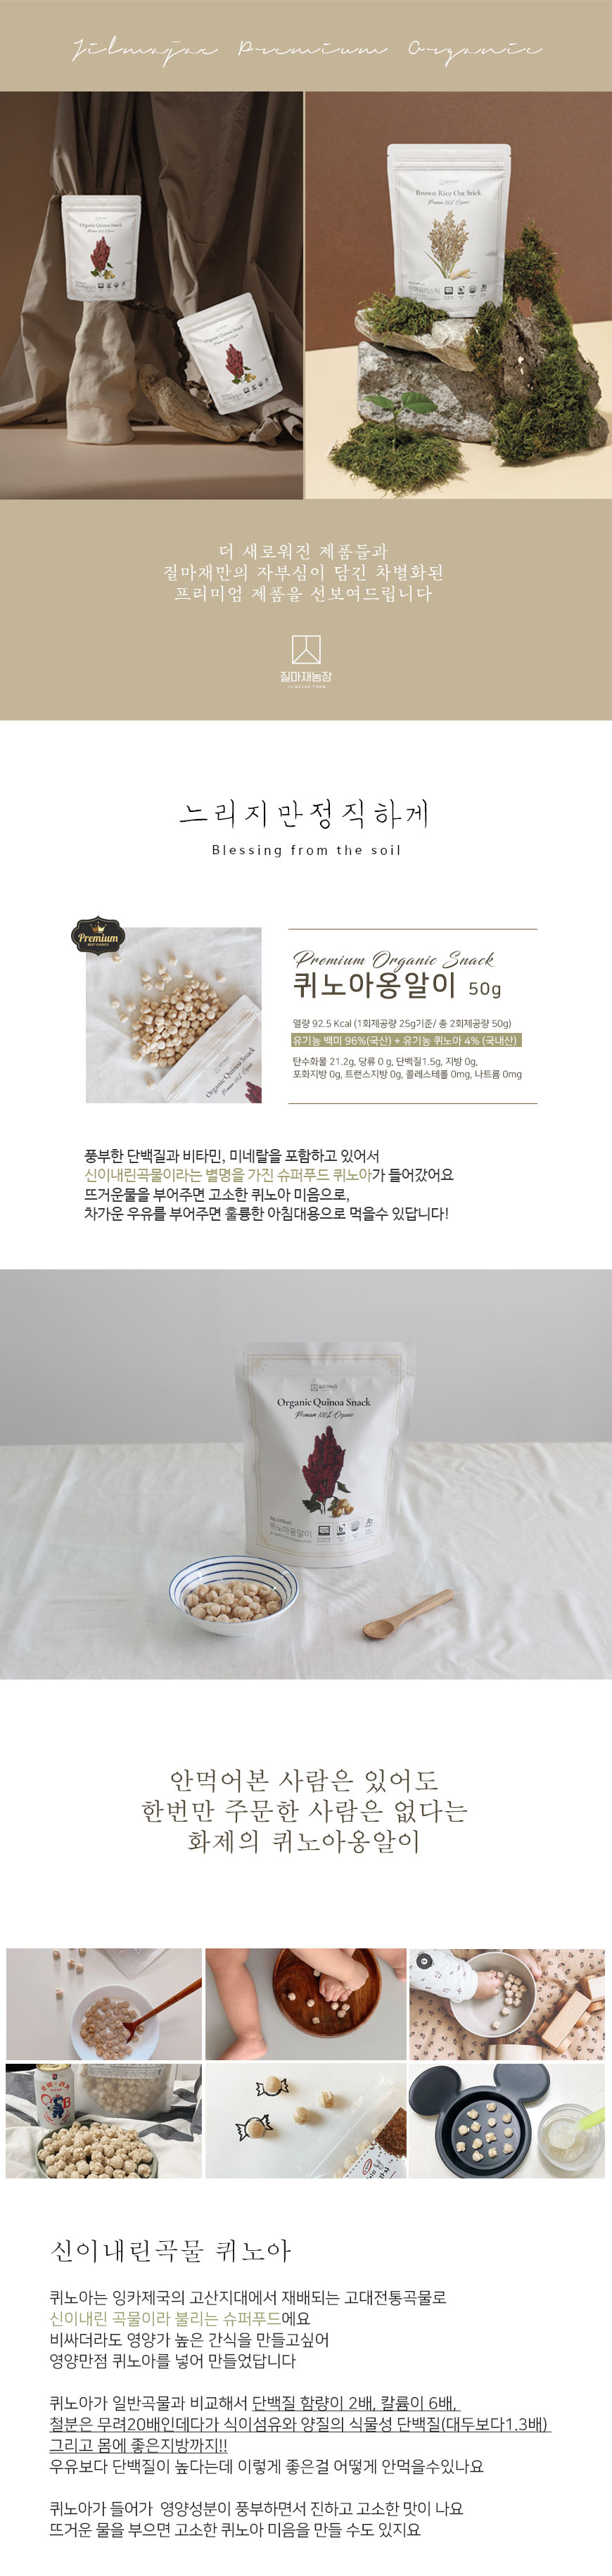 다양한 자연 재료와 함께 디스플레이된 질마재농장의 유기농쌀과자 퀴노아옹알이 제품 포장.